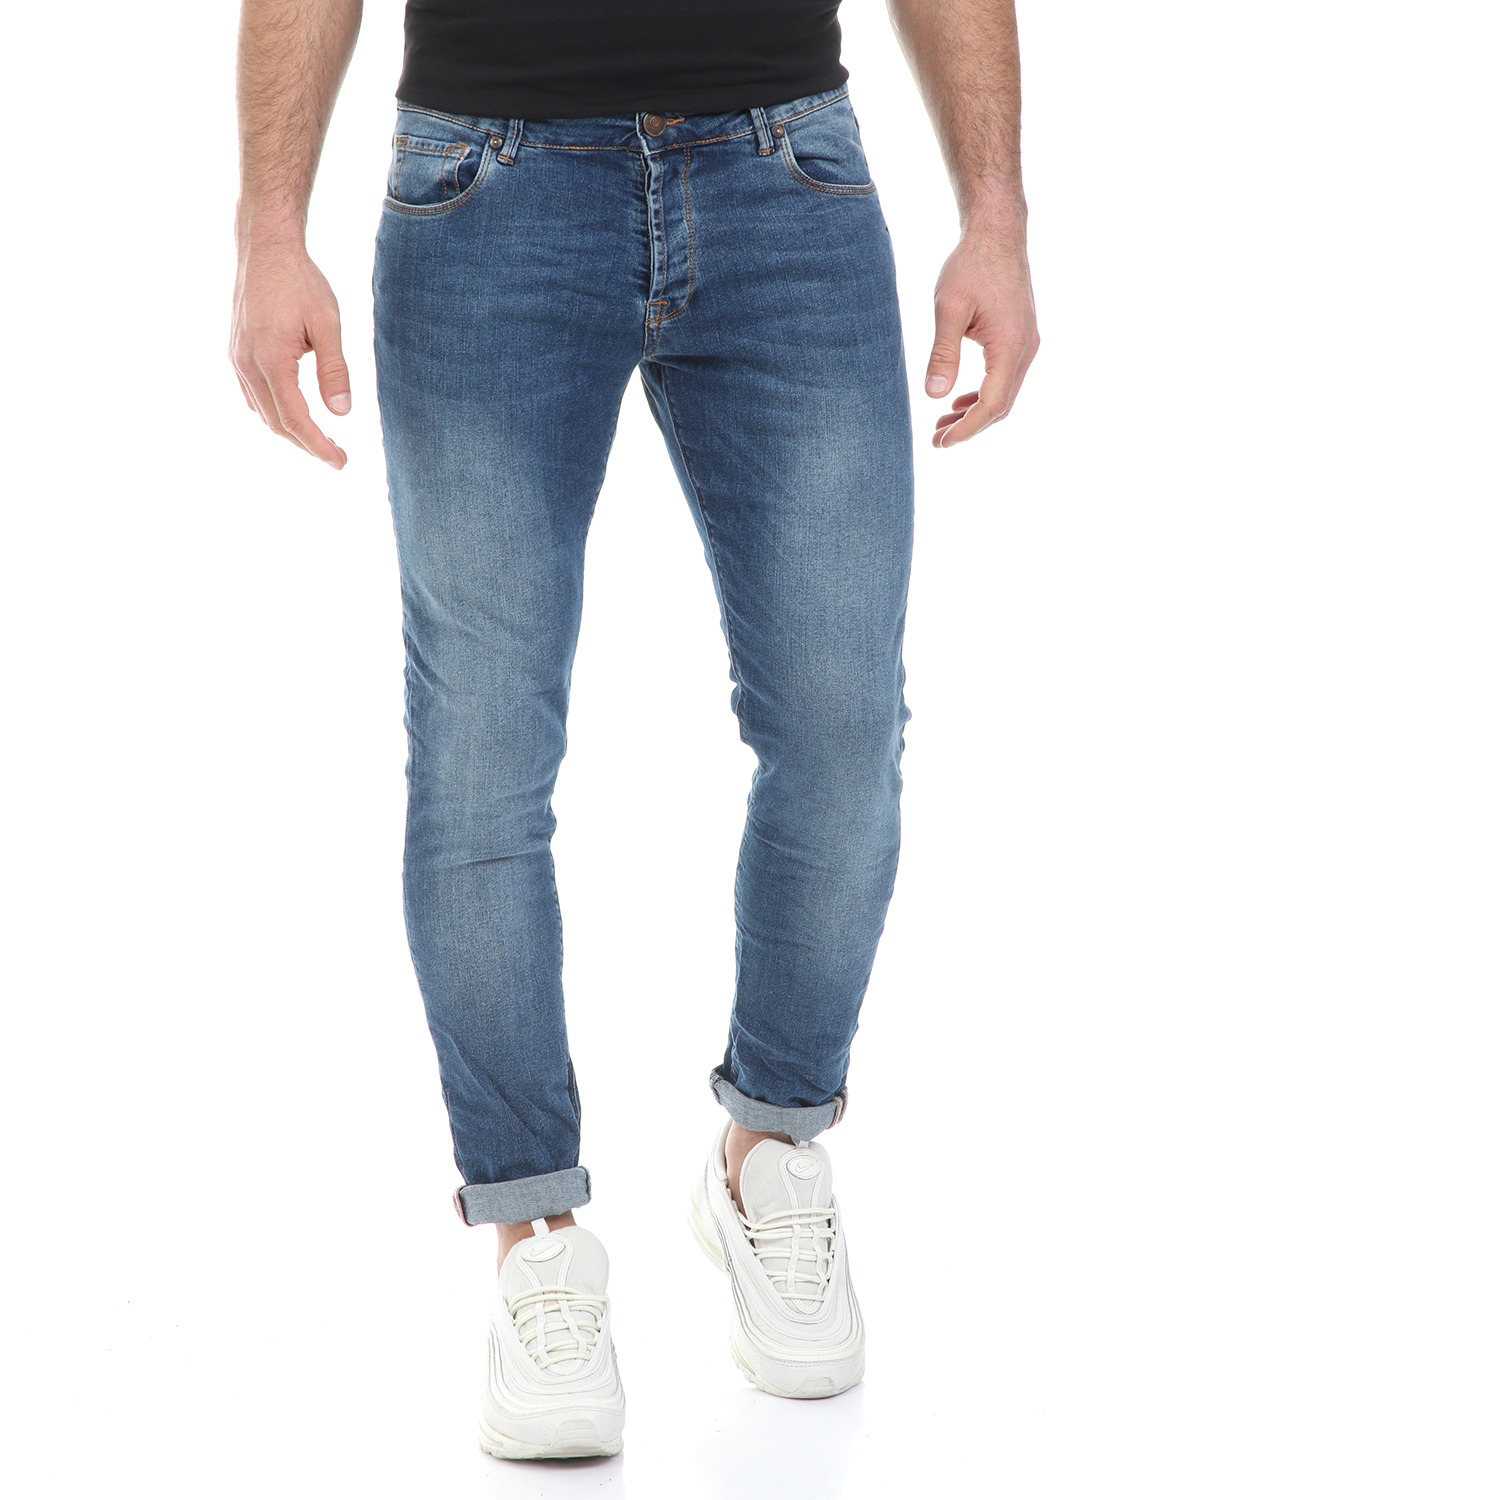 Ανδρικά/Ρούχα/Τζίν/Skinny WHY NOT - Ανδρικό jean παντελόνι WHY NOT SAN DIEGO LIGHT μπλε